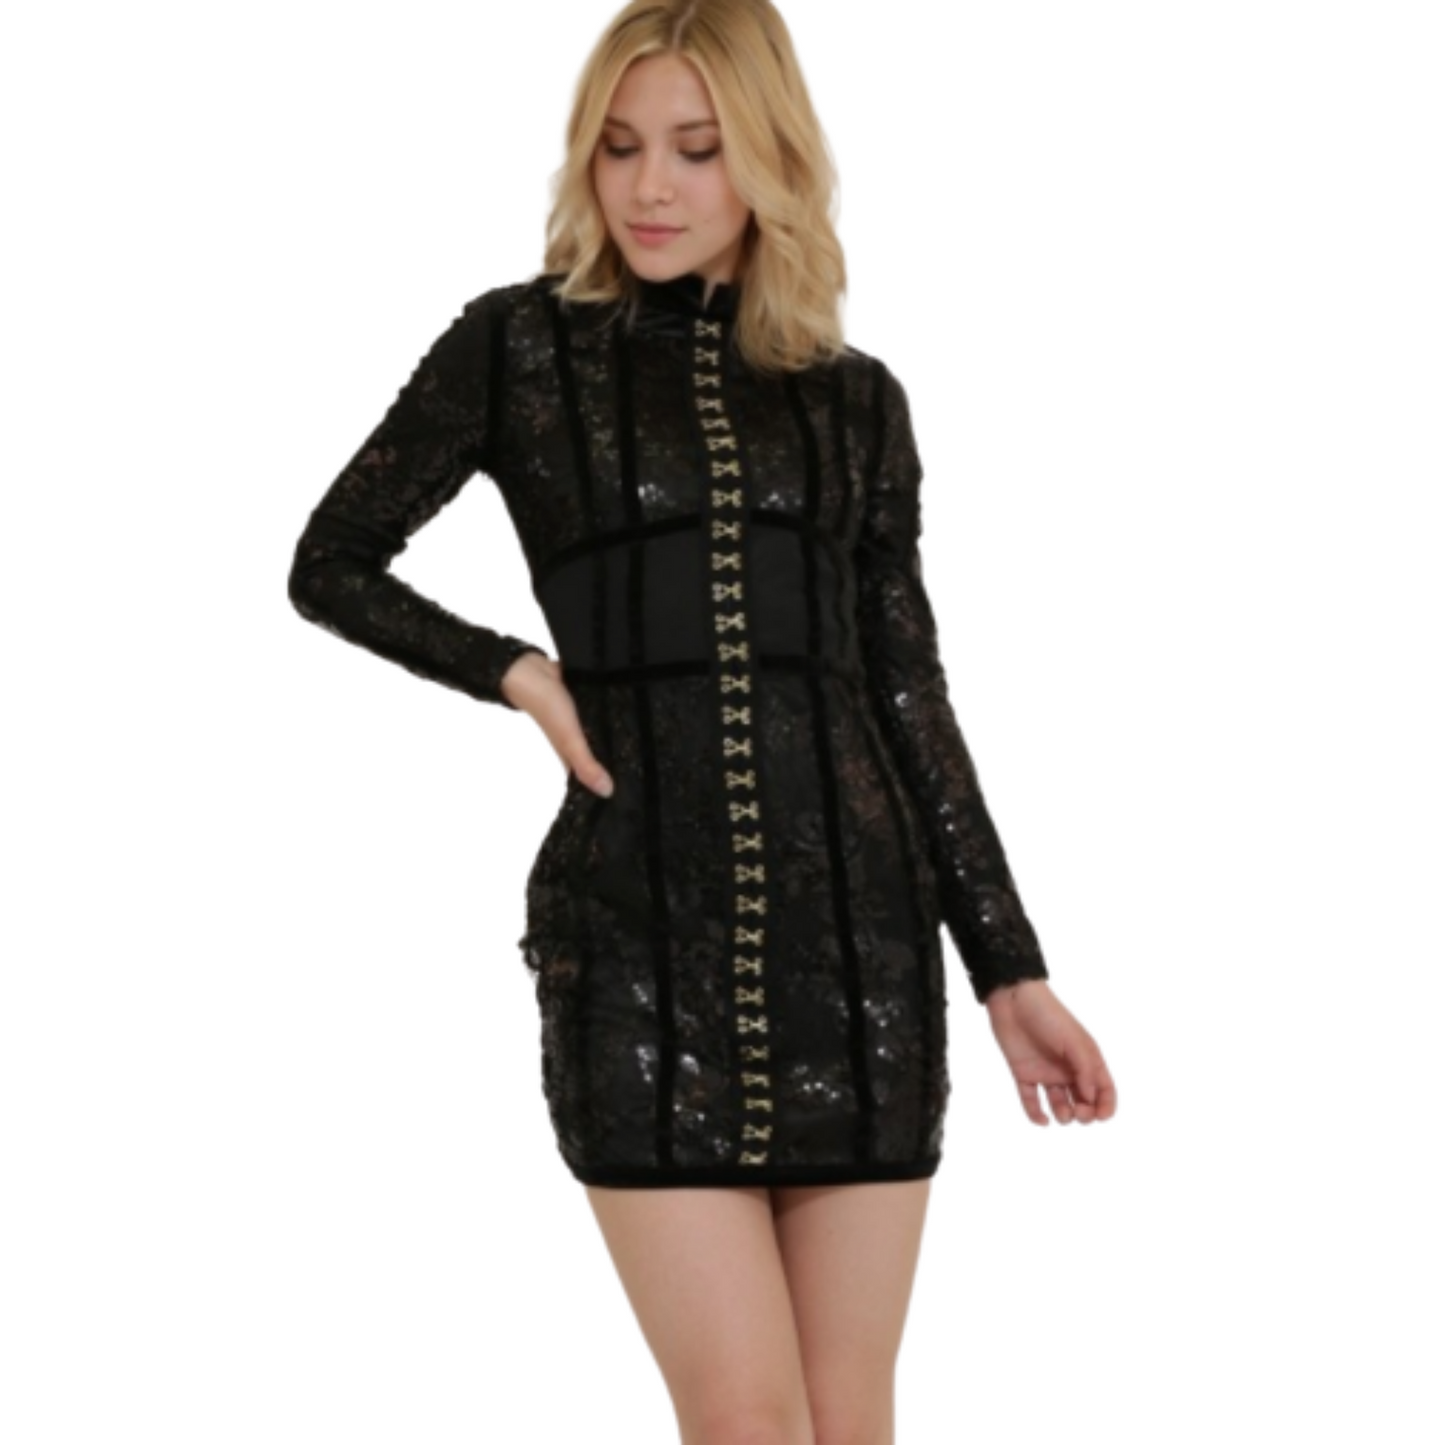 Xtaren Sequin Dress Black or Burgundy (S-L)